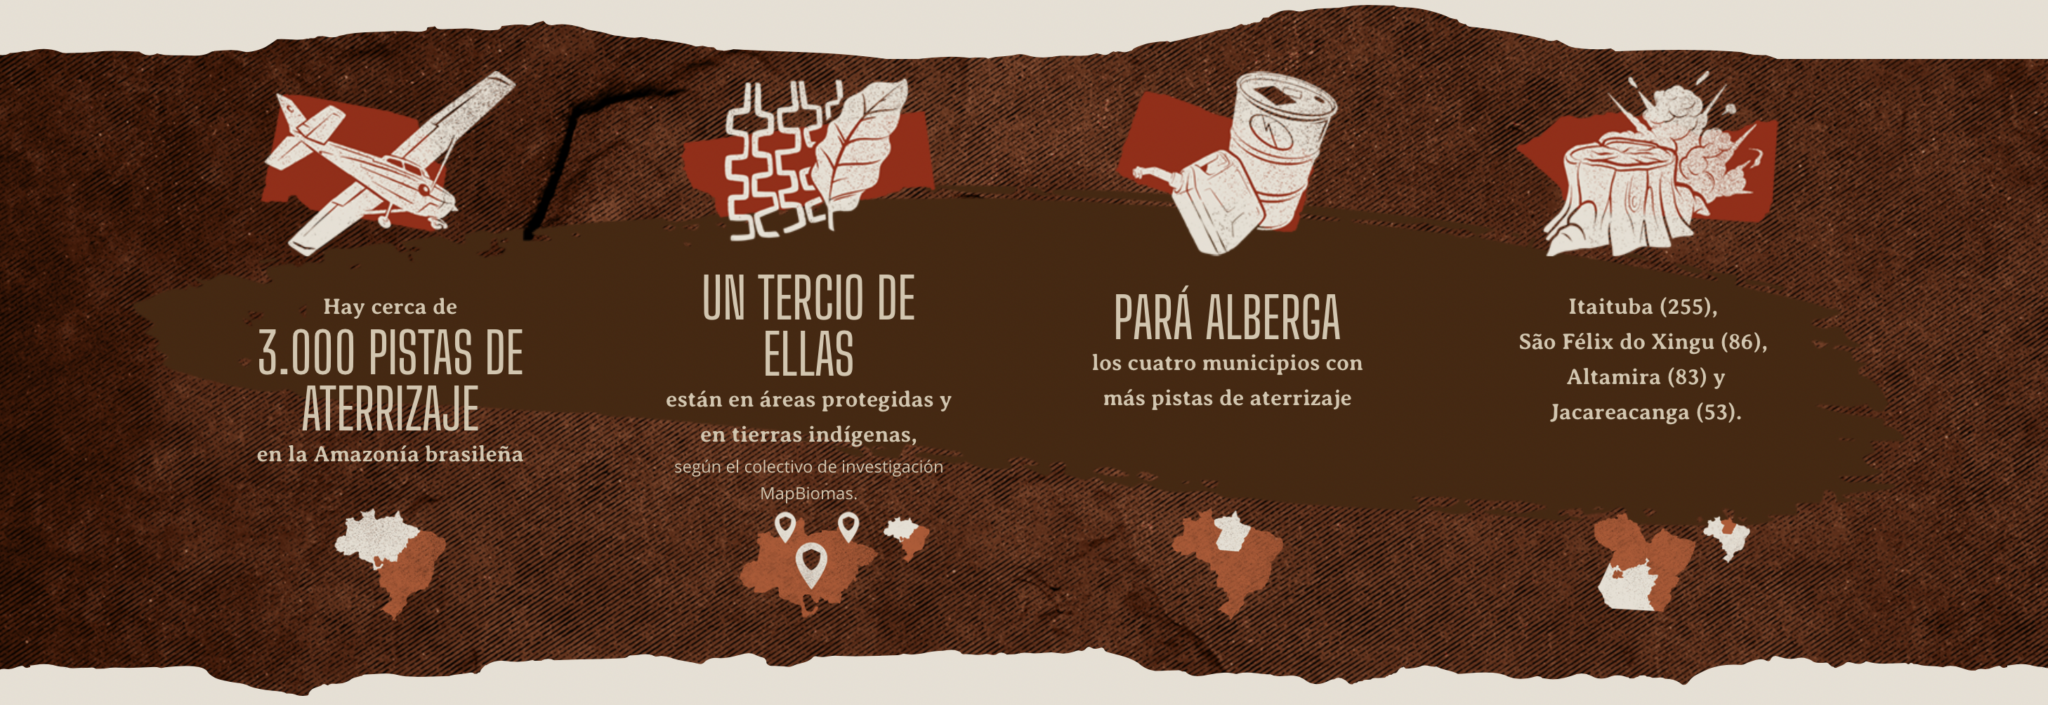 Infografía 4 amenaza comunidades Pará Brasil